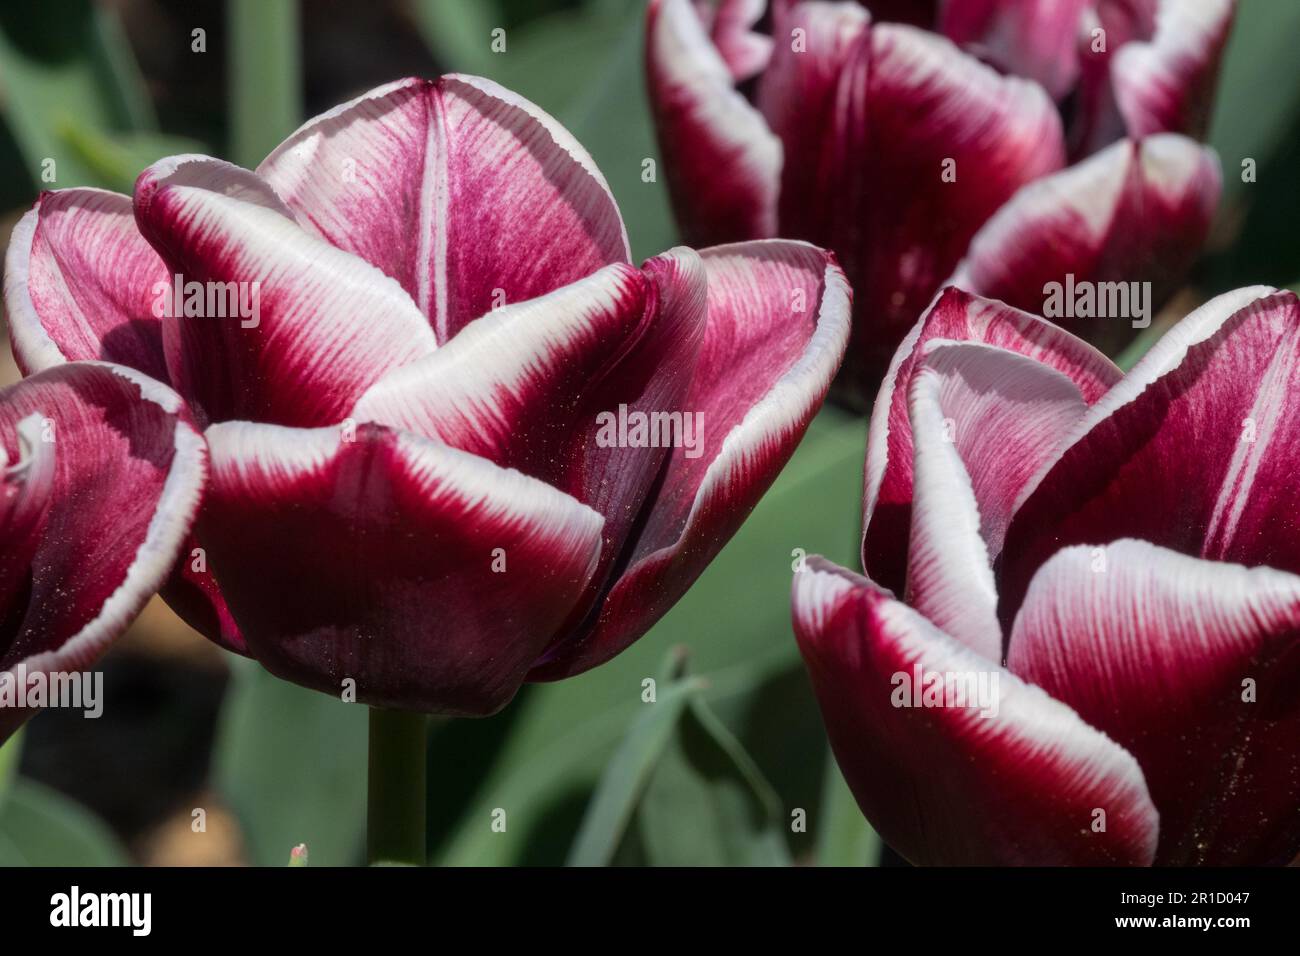 Tulipa 'Arabian Mystery' Stock Photo